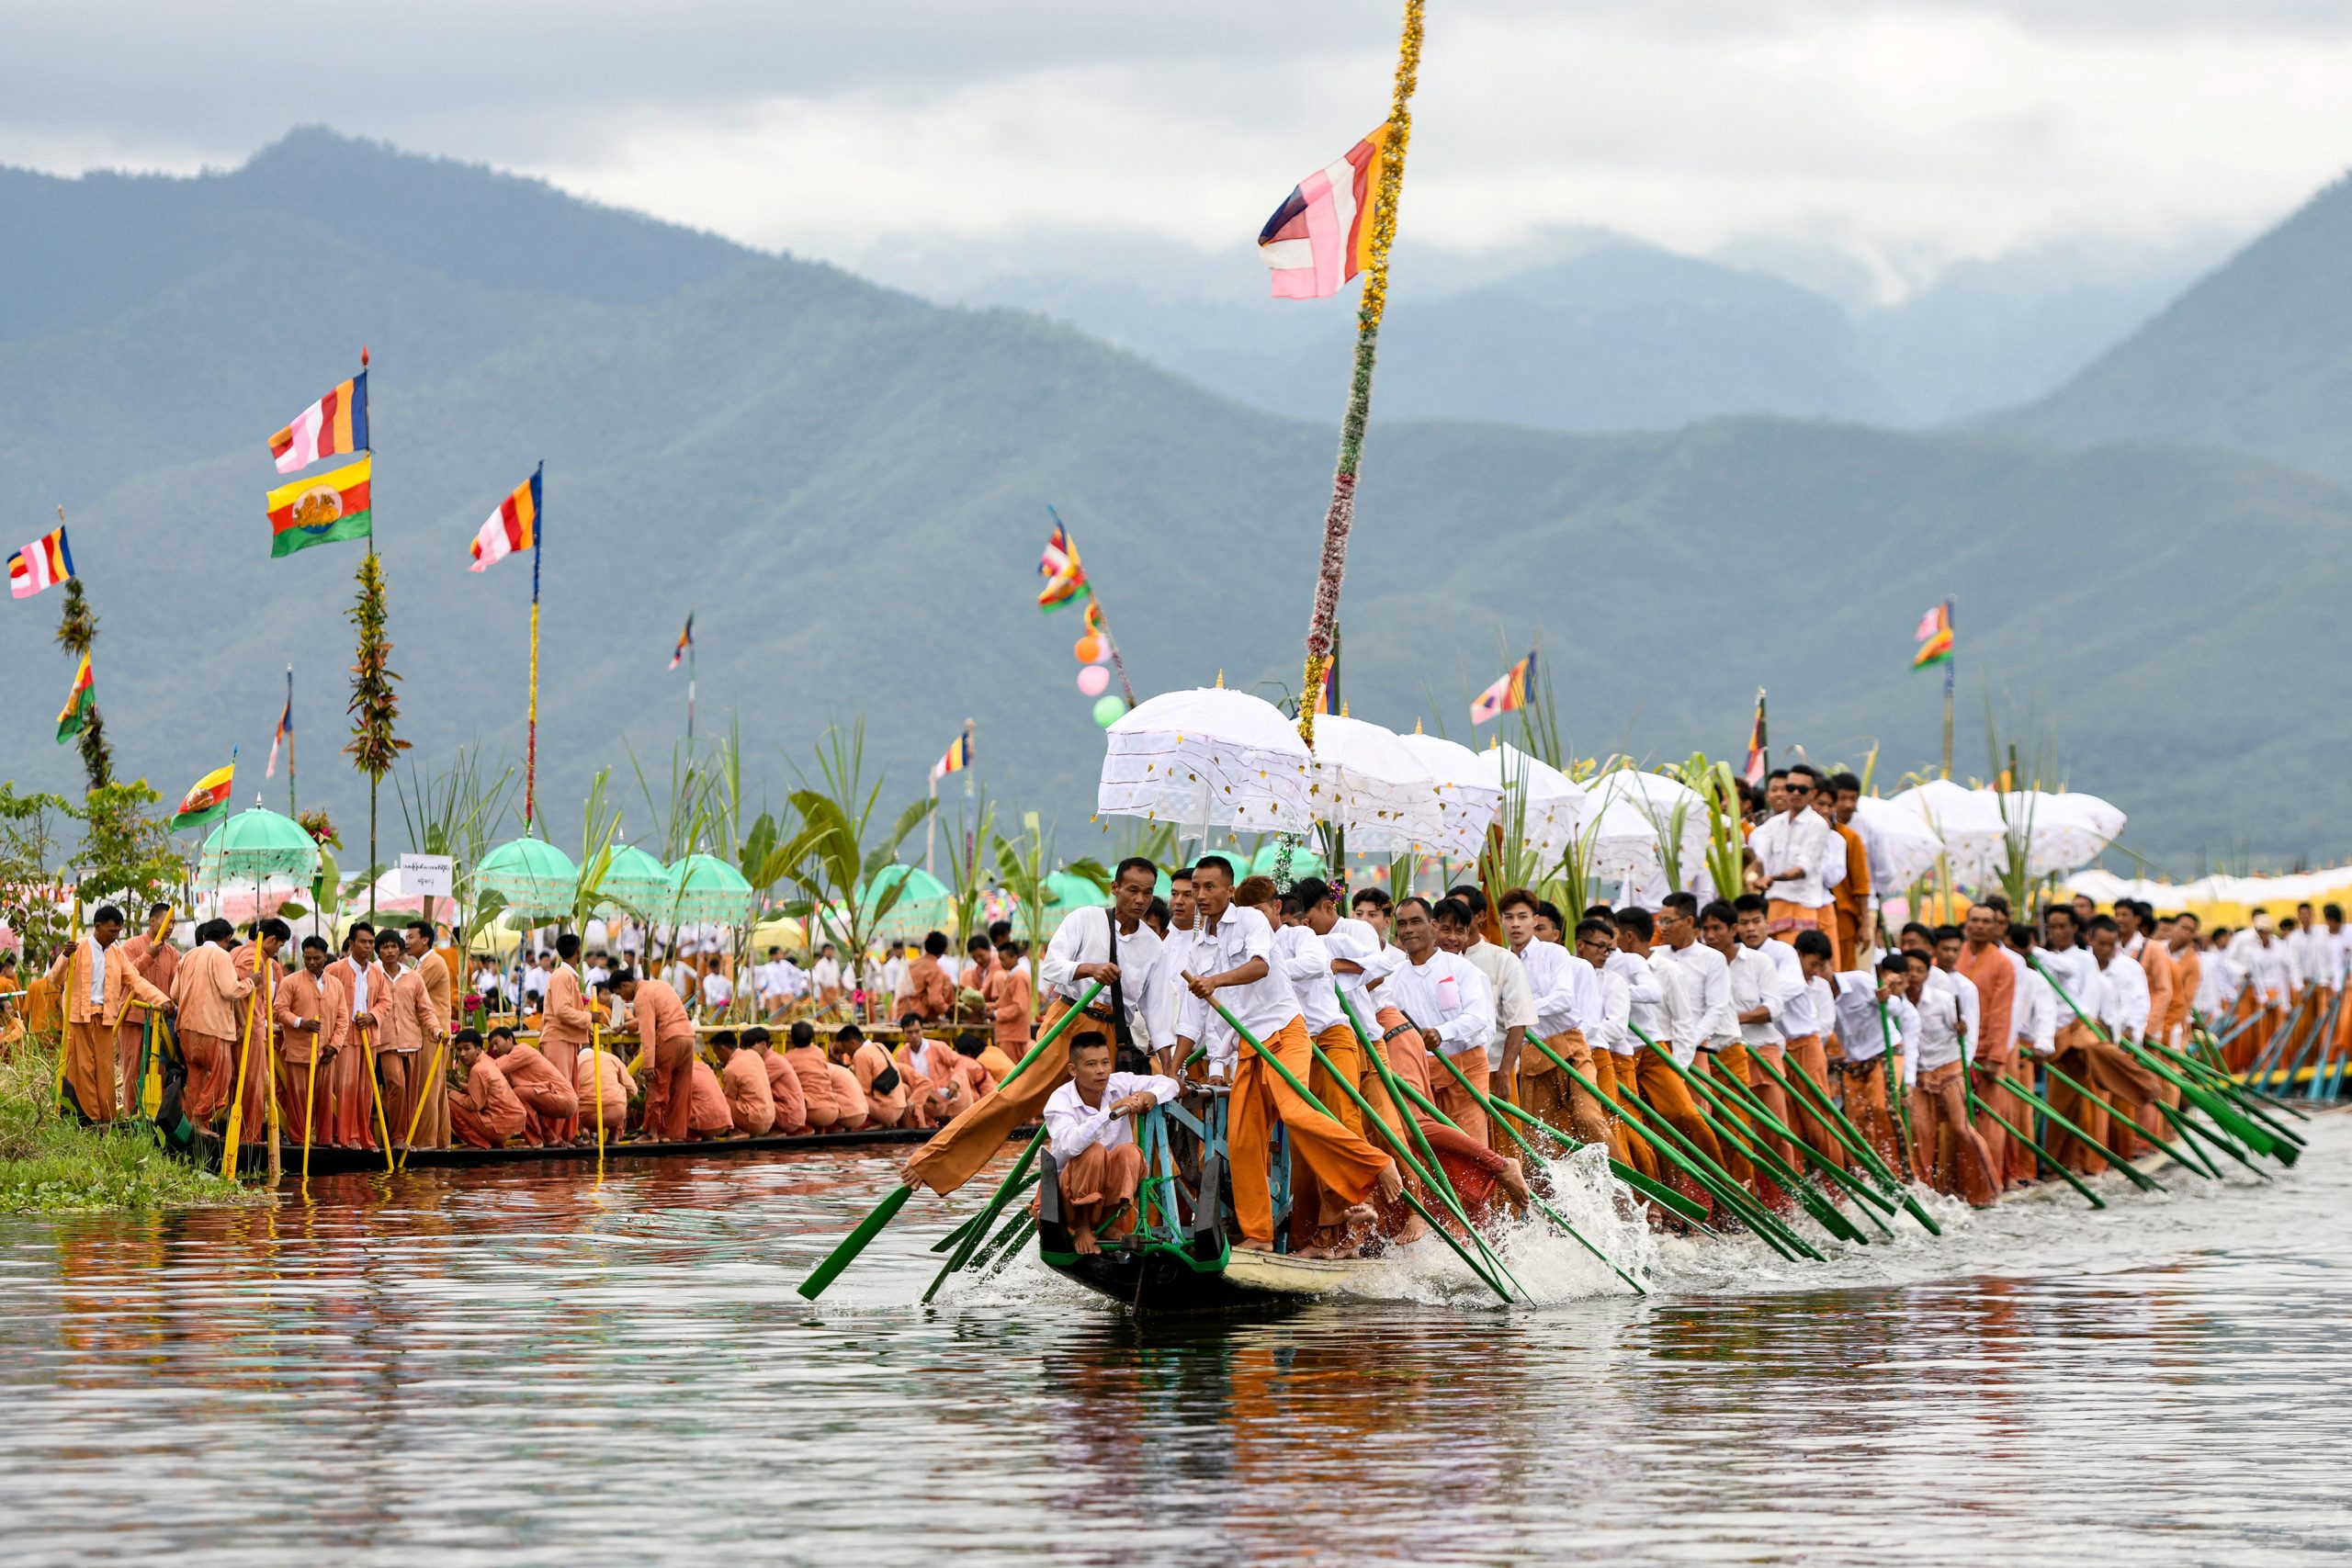 Myanmar Boat Festival's Return Brings Joy and Sorrow